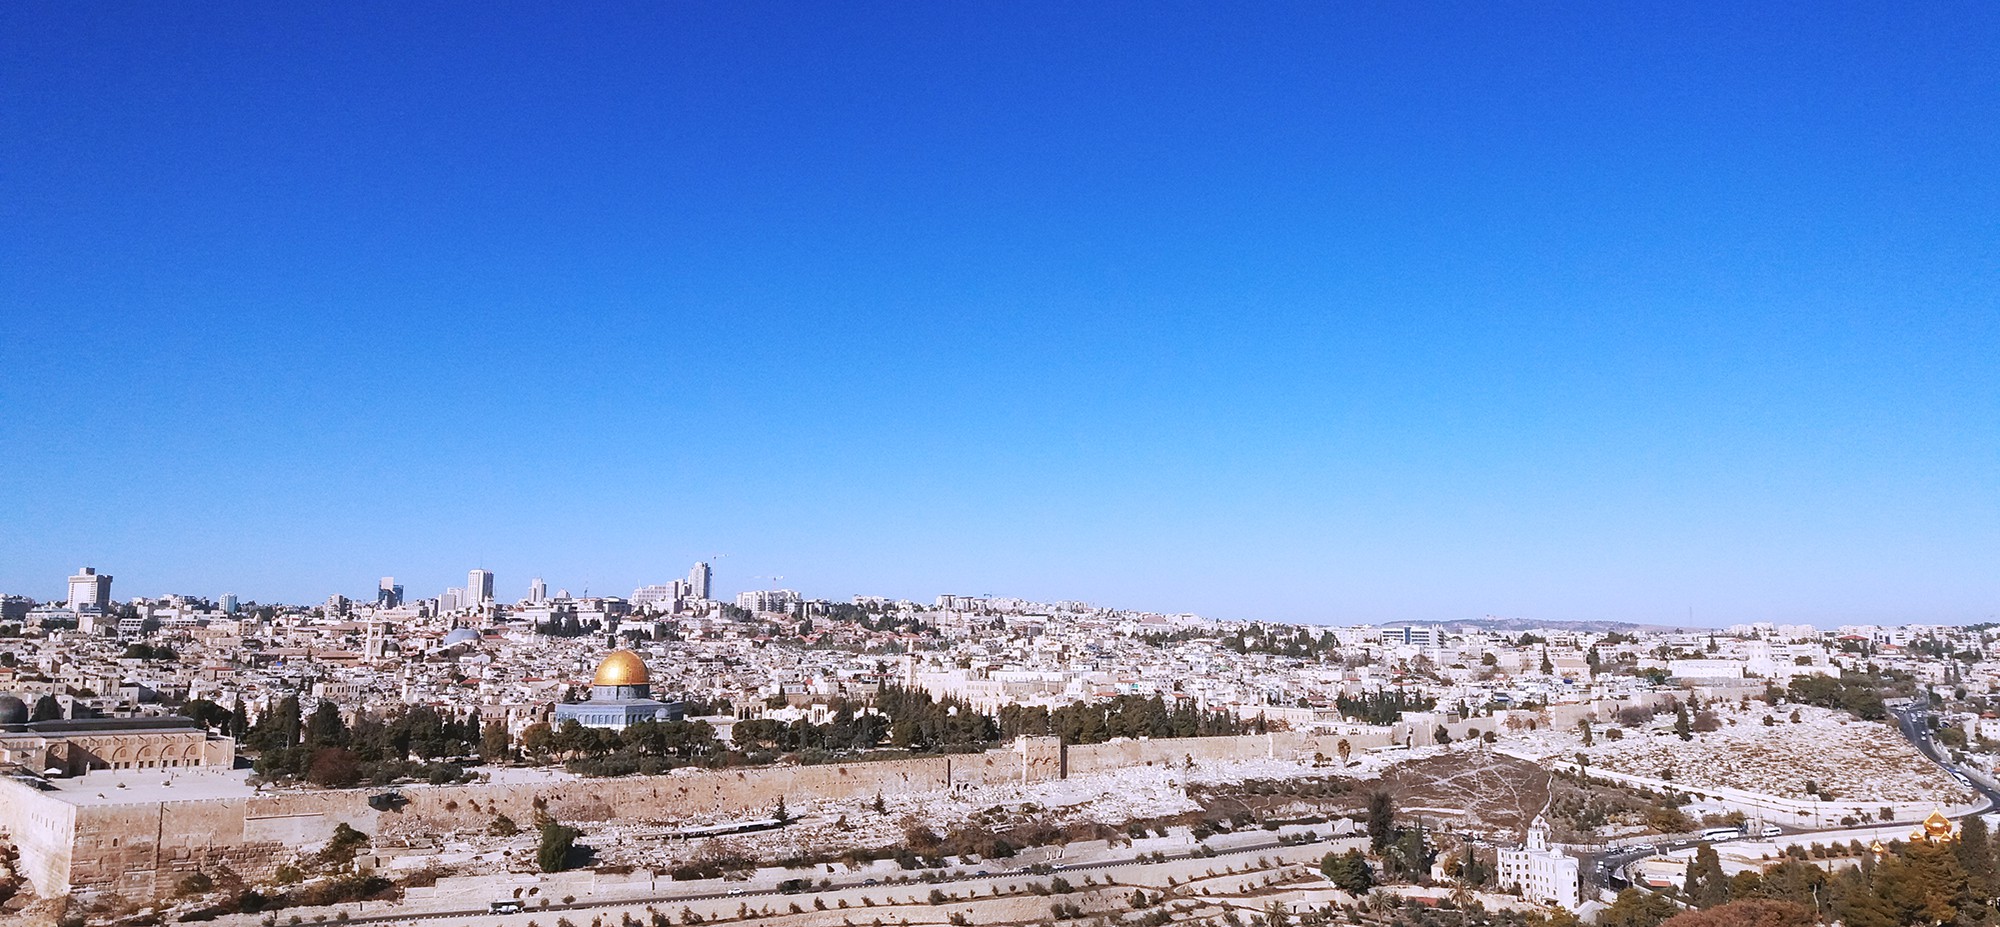 [PHOTO ESSAY] Hành trình tới thánh địa Jerusalem: Dưới chân bức tường Than Khóc - Ảnh 20.